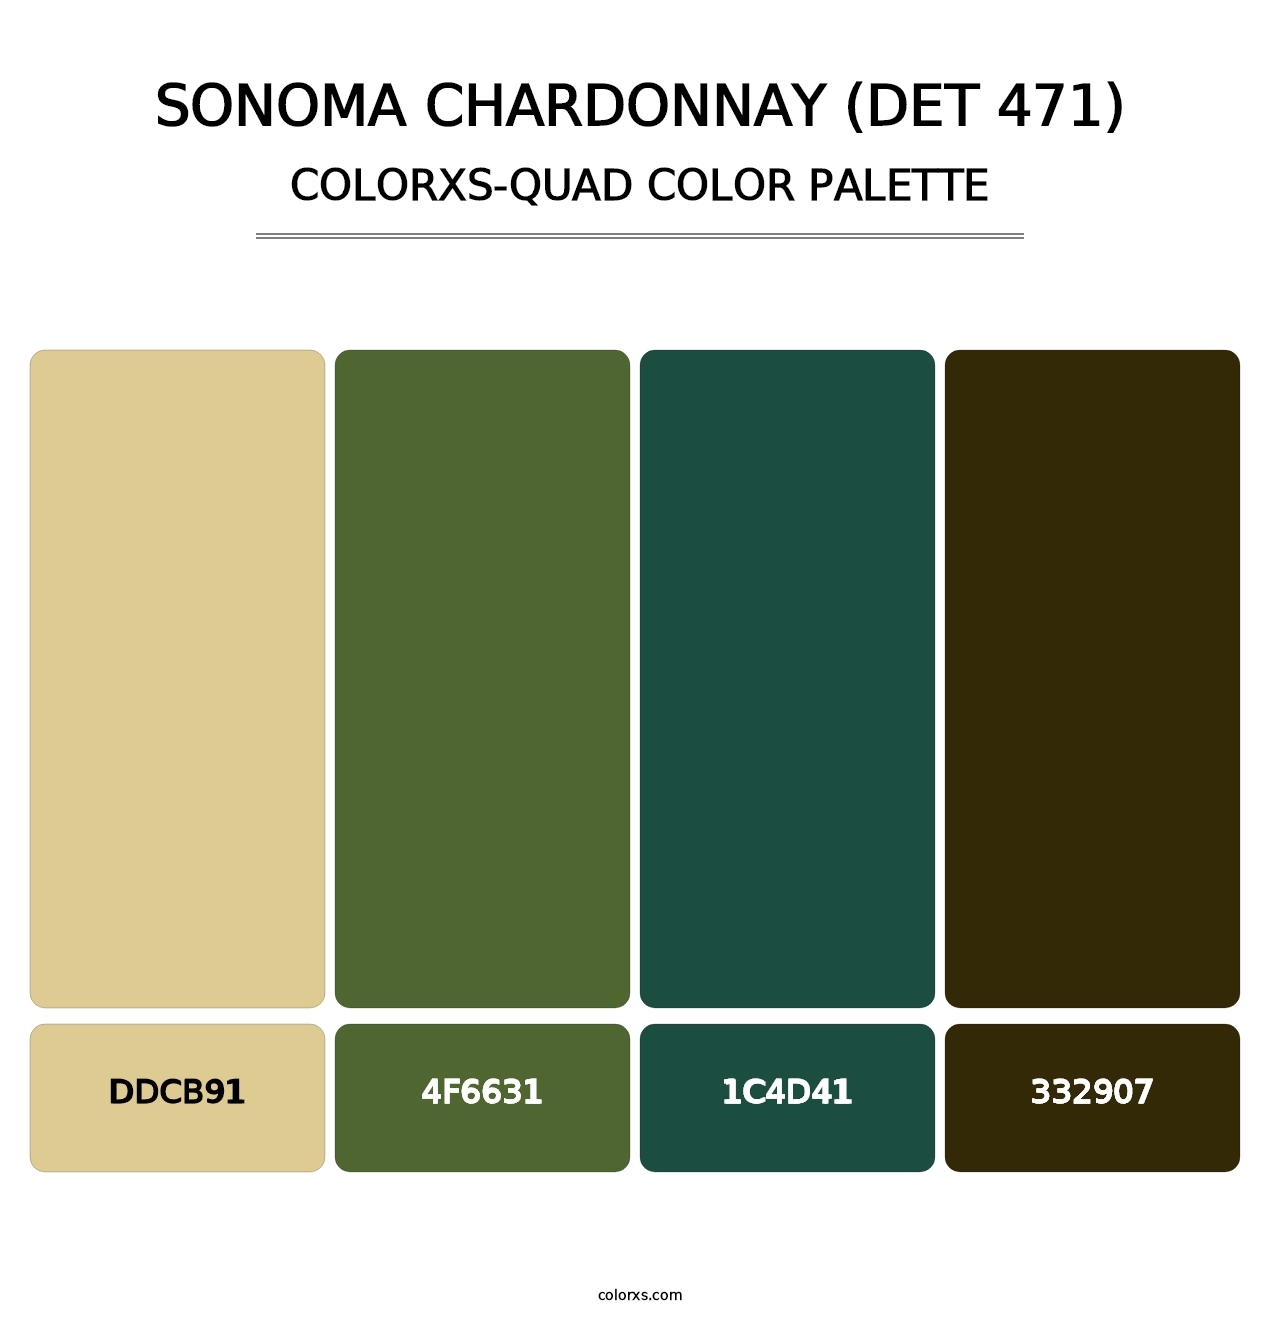 Sonoma Chardonnay (DET 471) - Colorxs Quad Palette